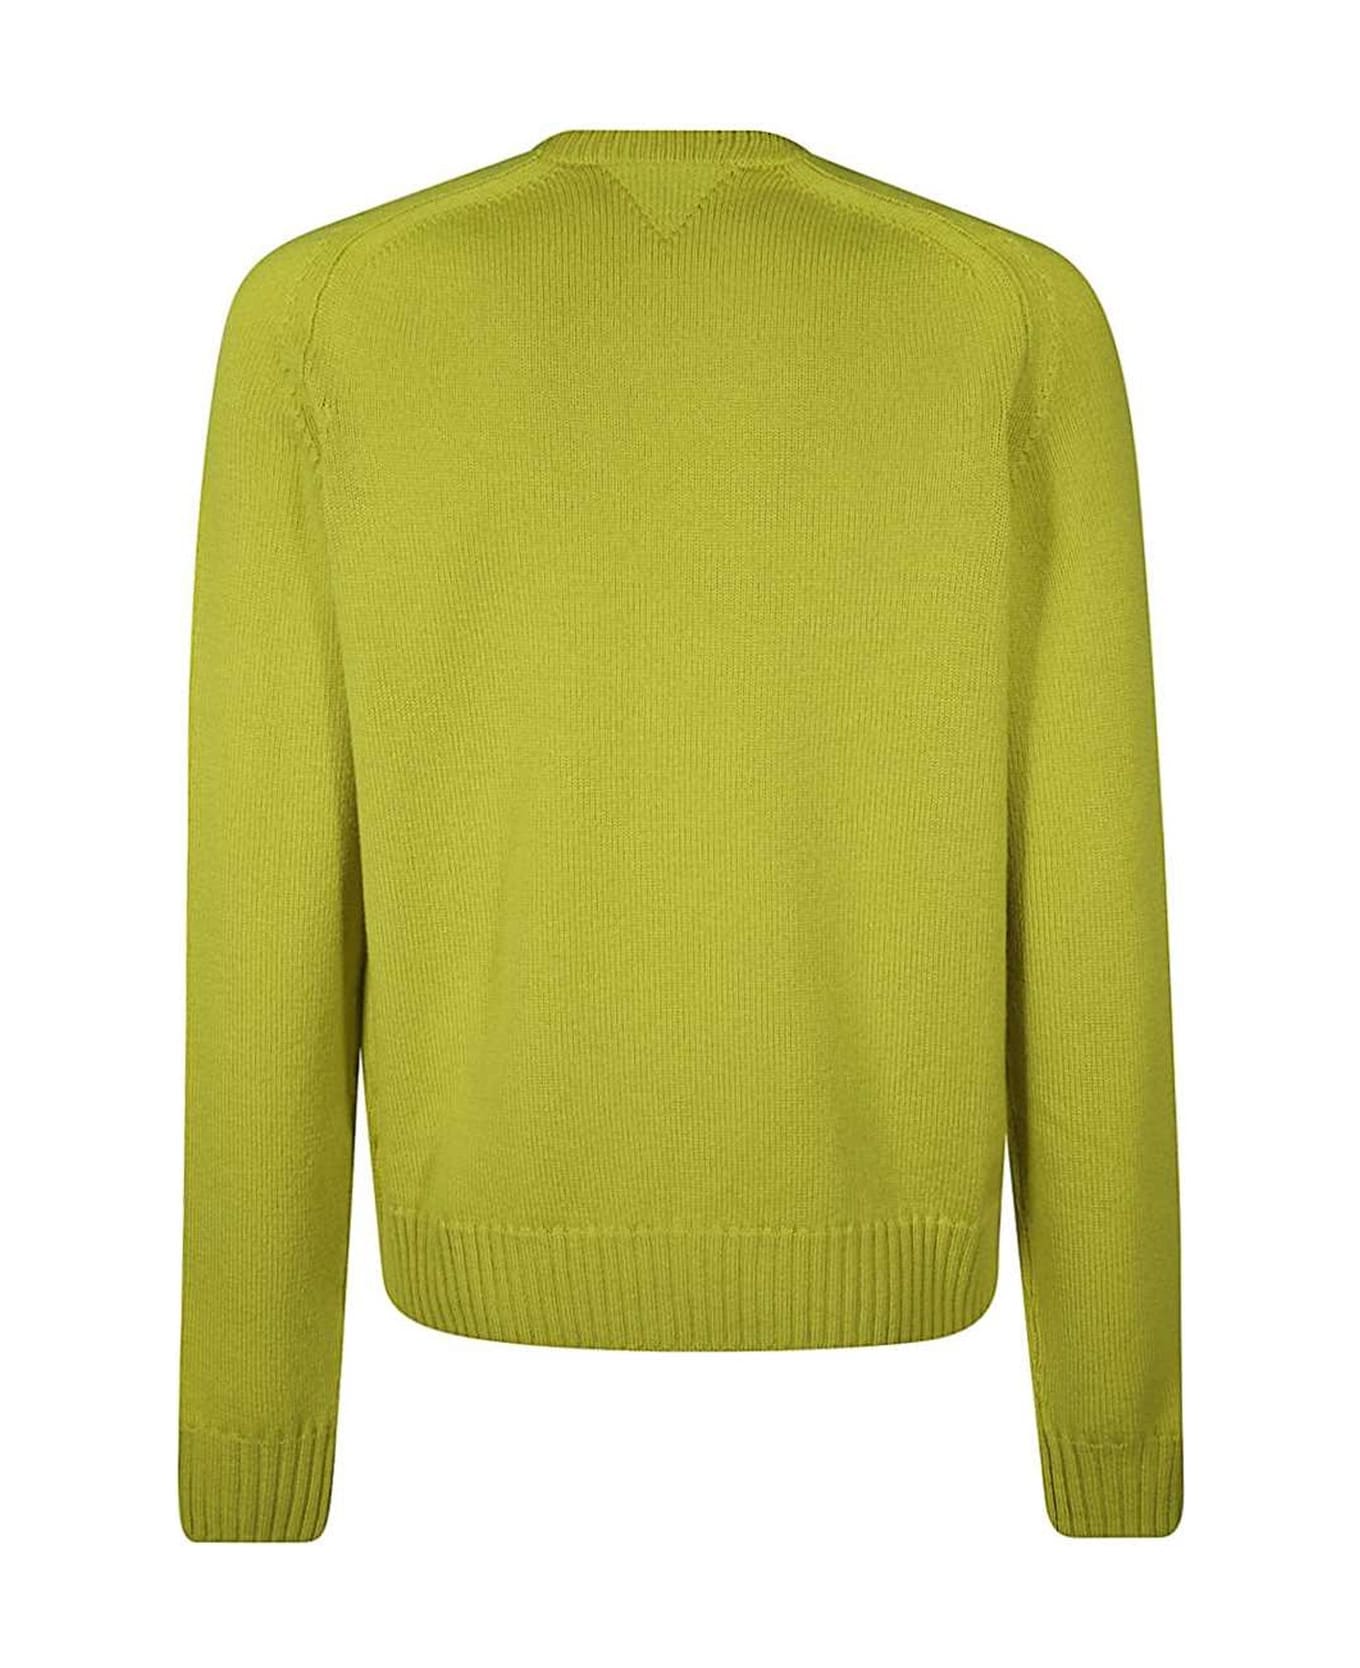 Bottega Veneta Sweater - Green